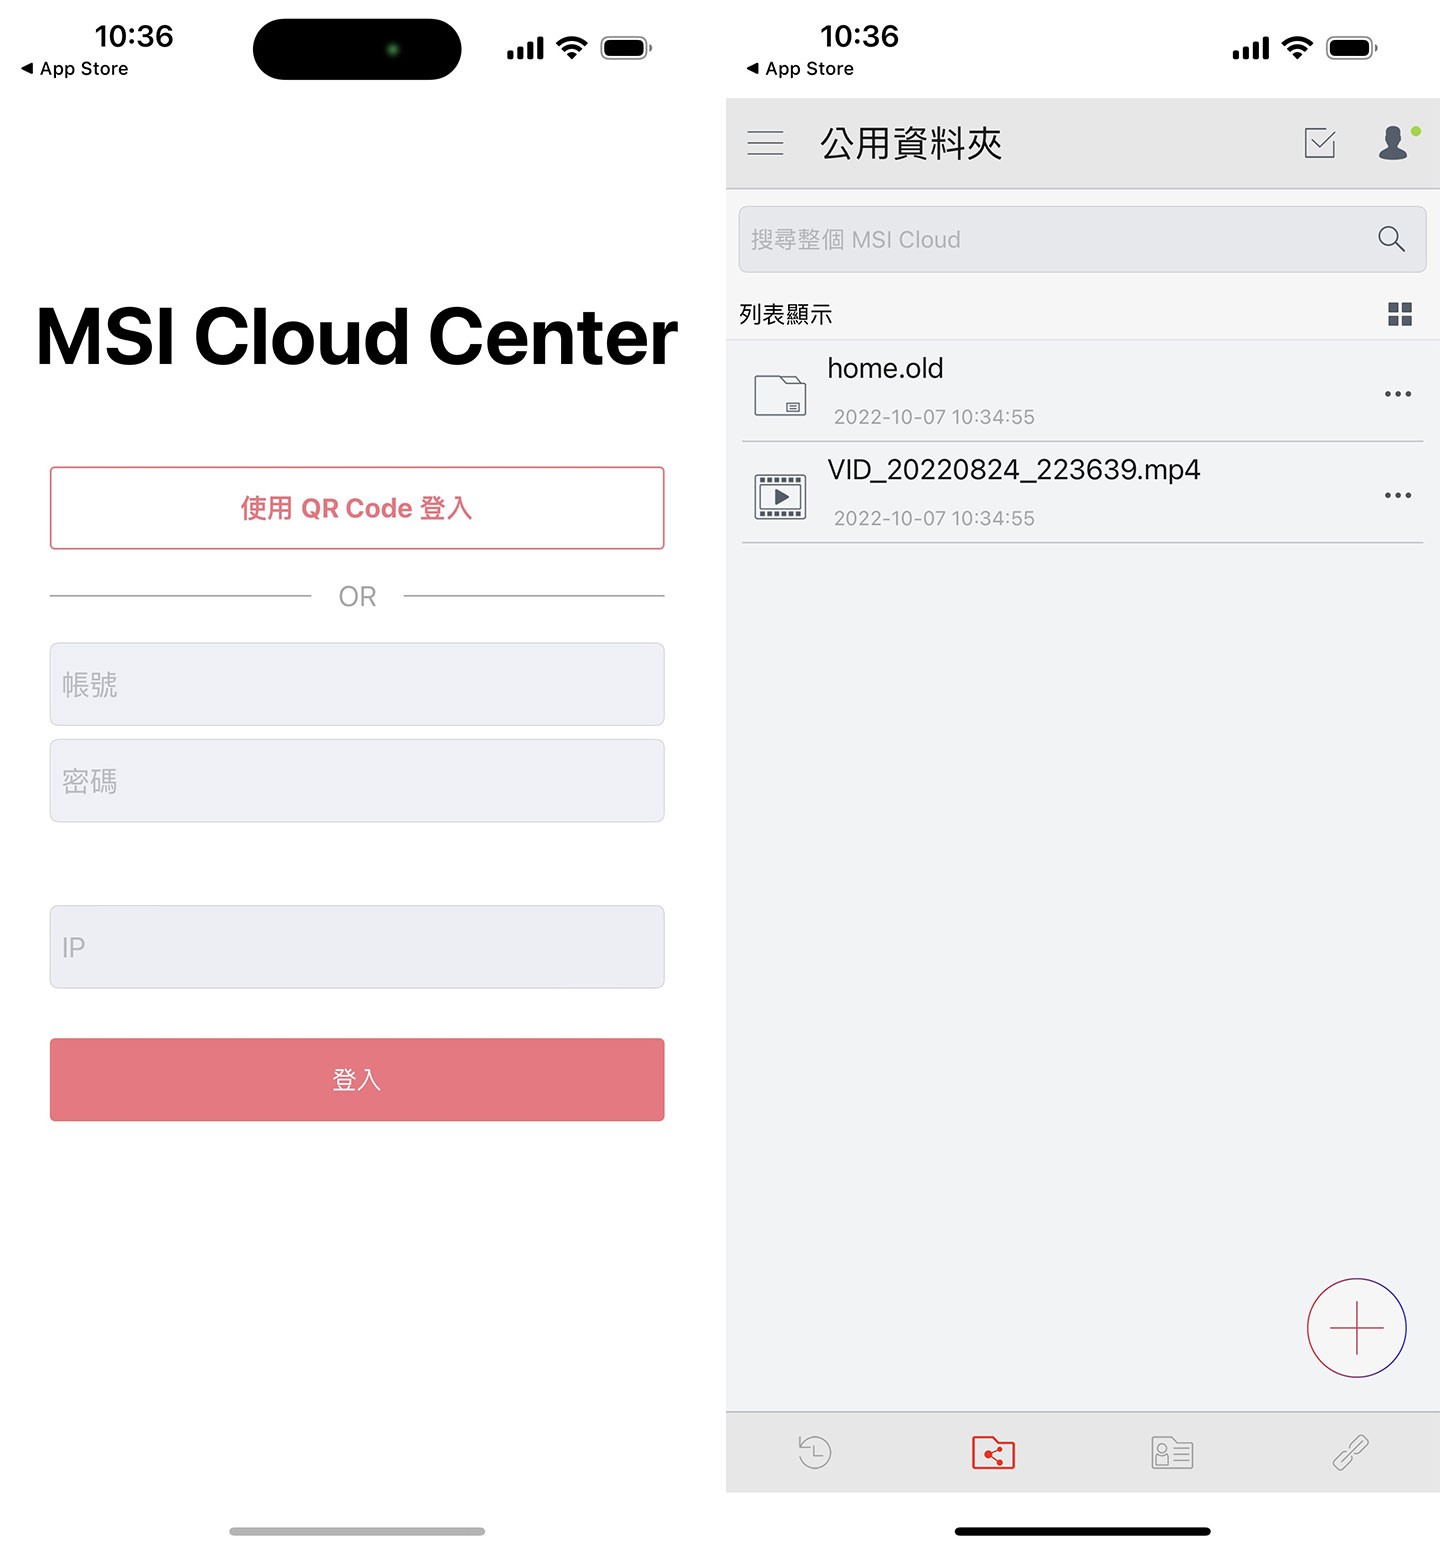 登入 MSI Cloud Center 後即可查看與電腦同的資料夾。